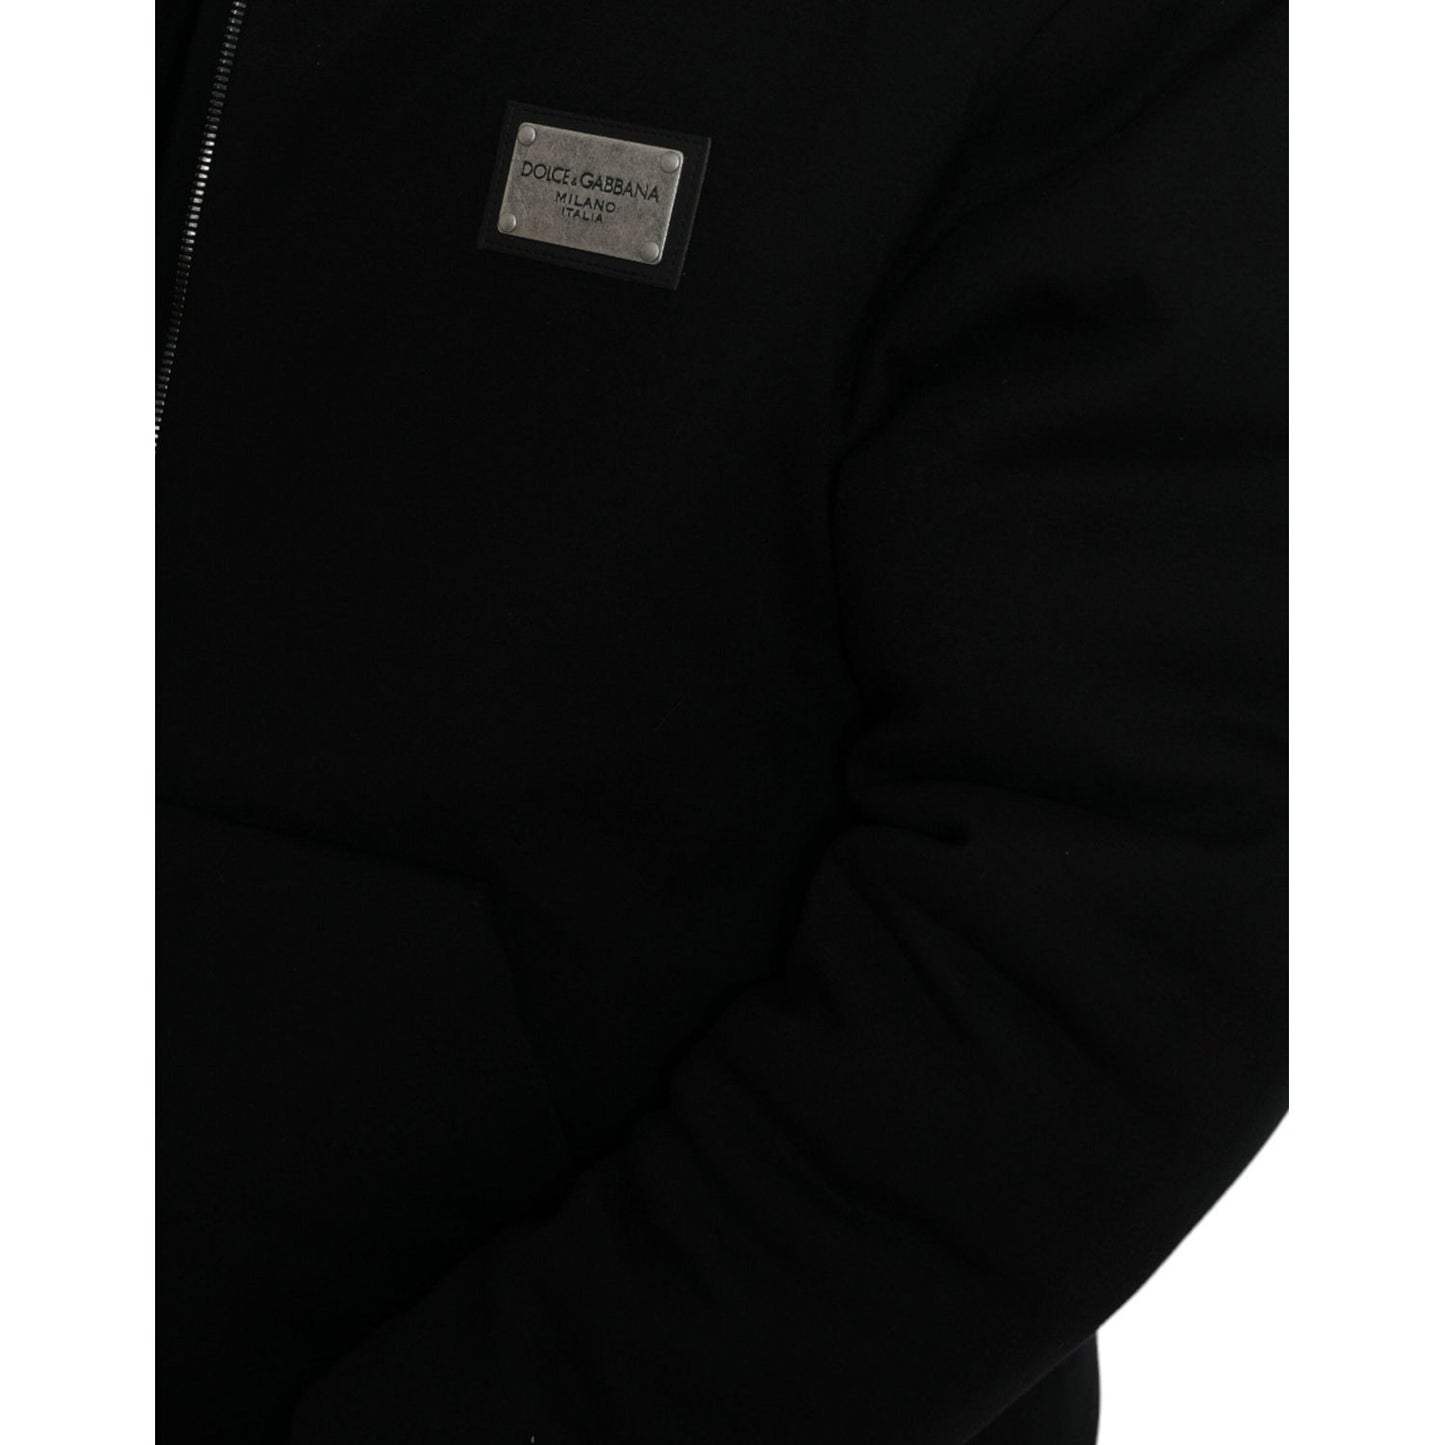 Dolce & Gabbana Elegant Black Bomber Jacket with Hood black-cotton-hooded-logo-bomber-jacket